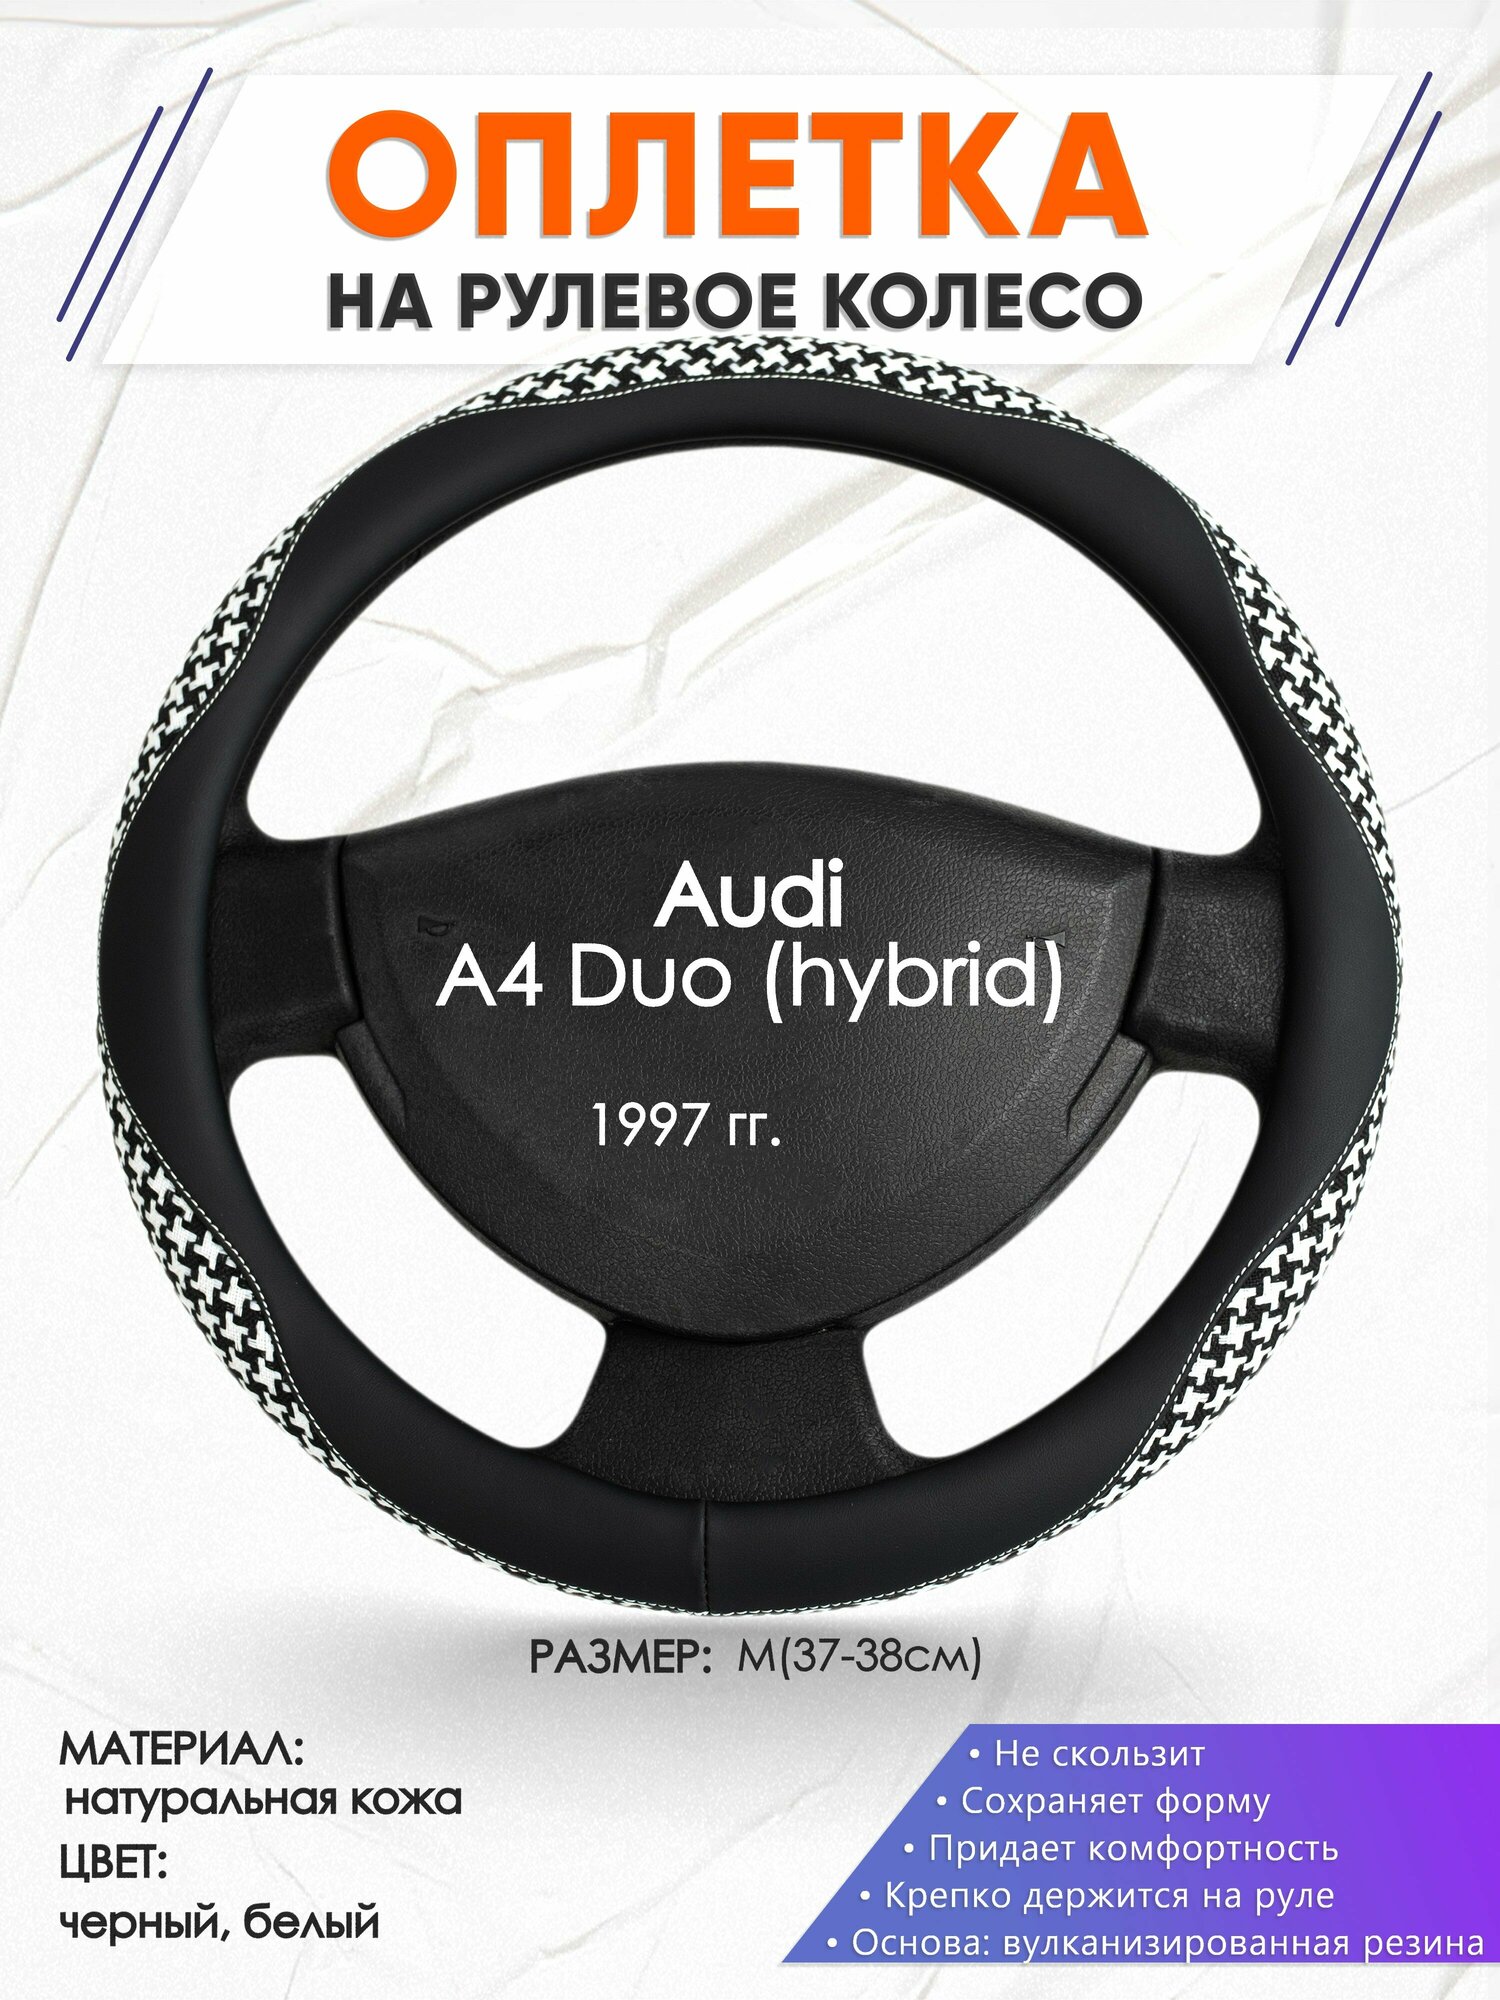 Оплетка наруль для Audi A4 Duo (hybrid)(Ауди А4 Дуо (гибрид)) 1997-н. в, годов выпуска, размер M(37-38см), Натуральная кожа 21